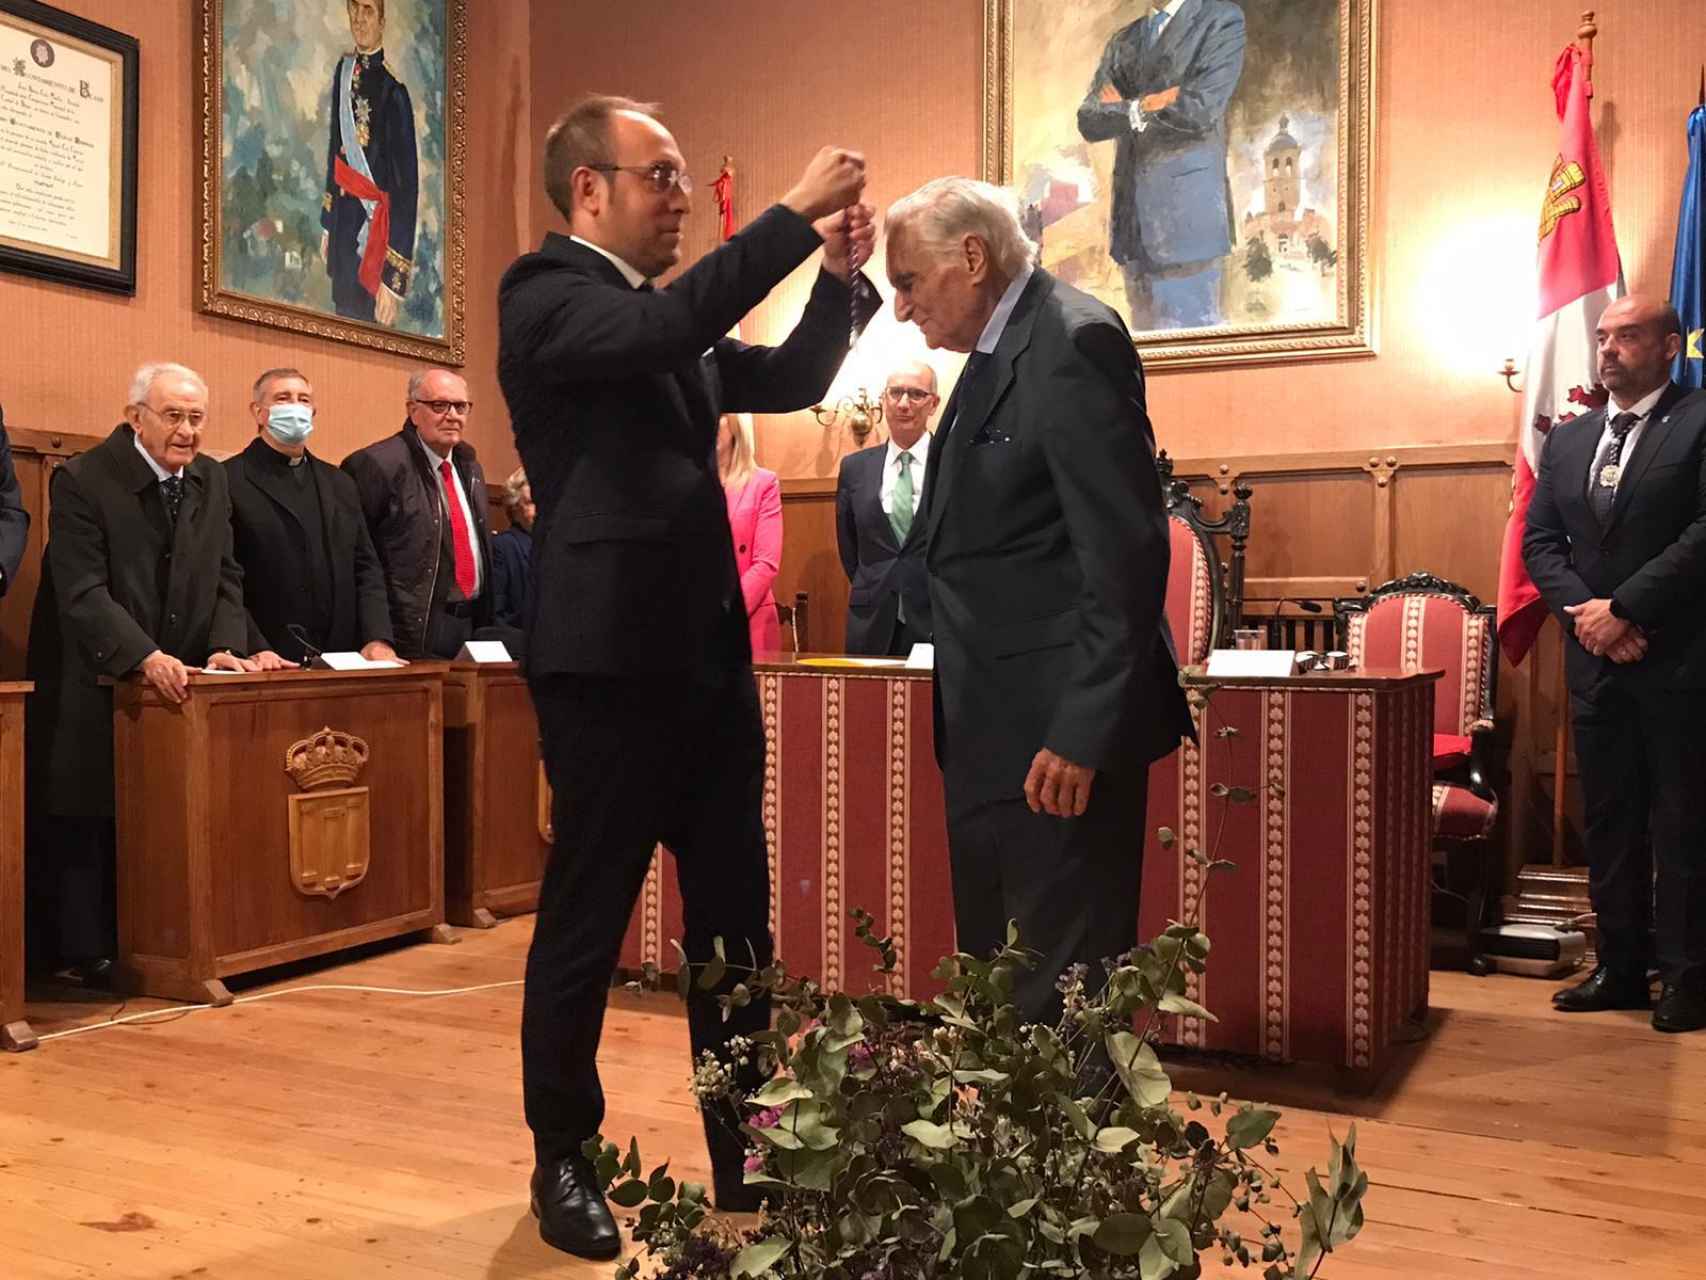 El alcalde de Ciudad Rodrigo, Marcos Iglesias, pone el título de hijo predilecto al ex alcalde Manuel Delgado Sánchez-Arjona